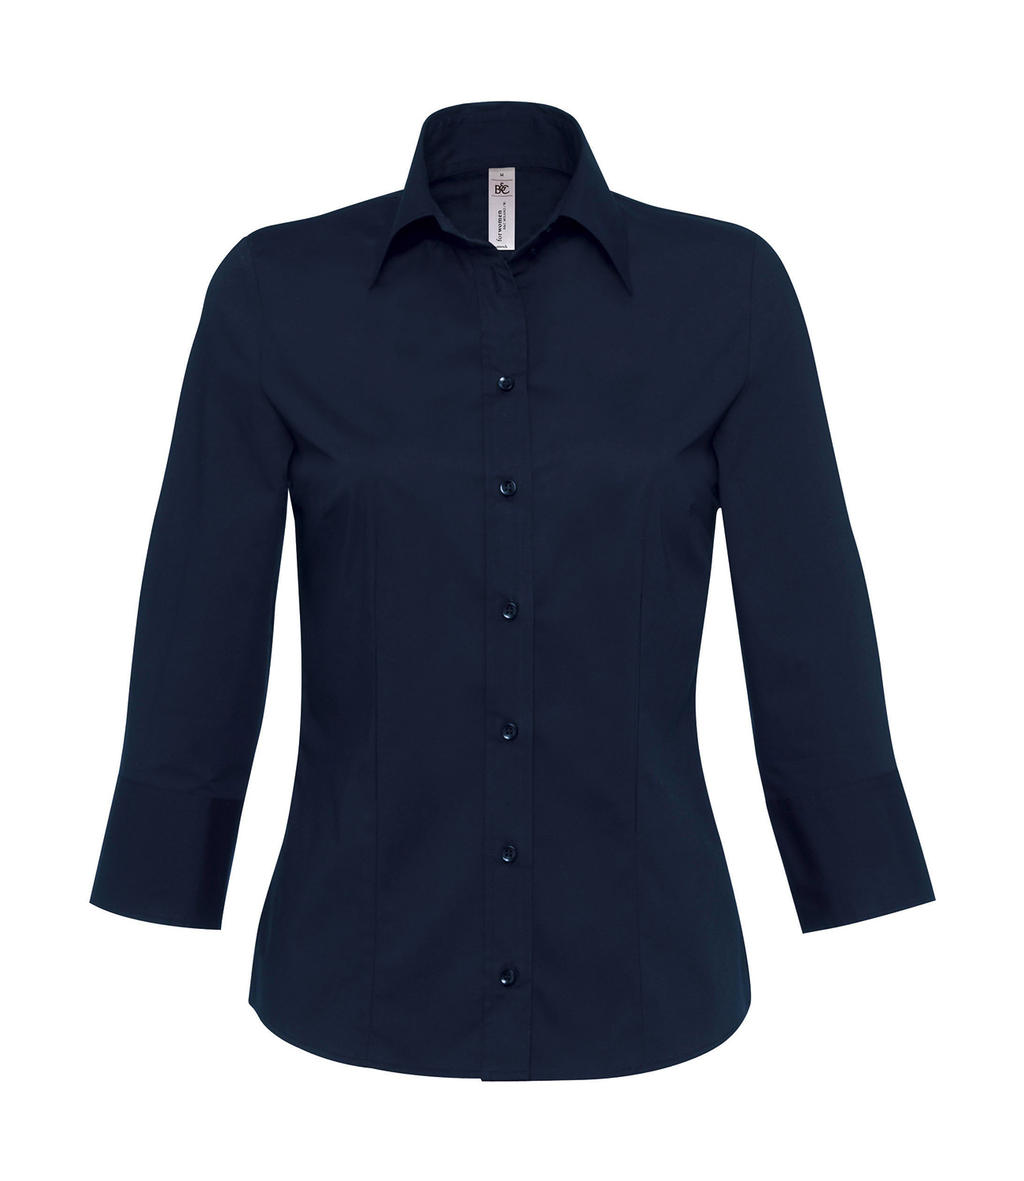  Milano/women Popelin Shirt 3/4 sleeves in Farbe Navy